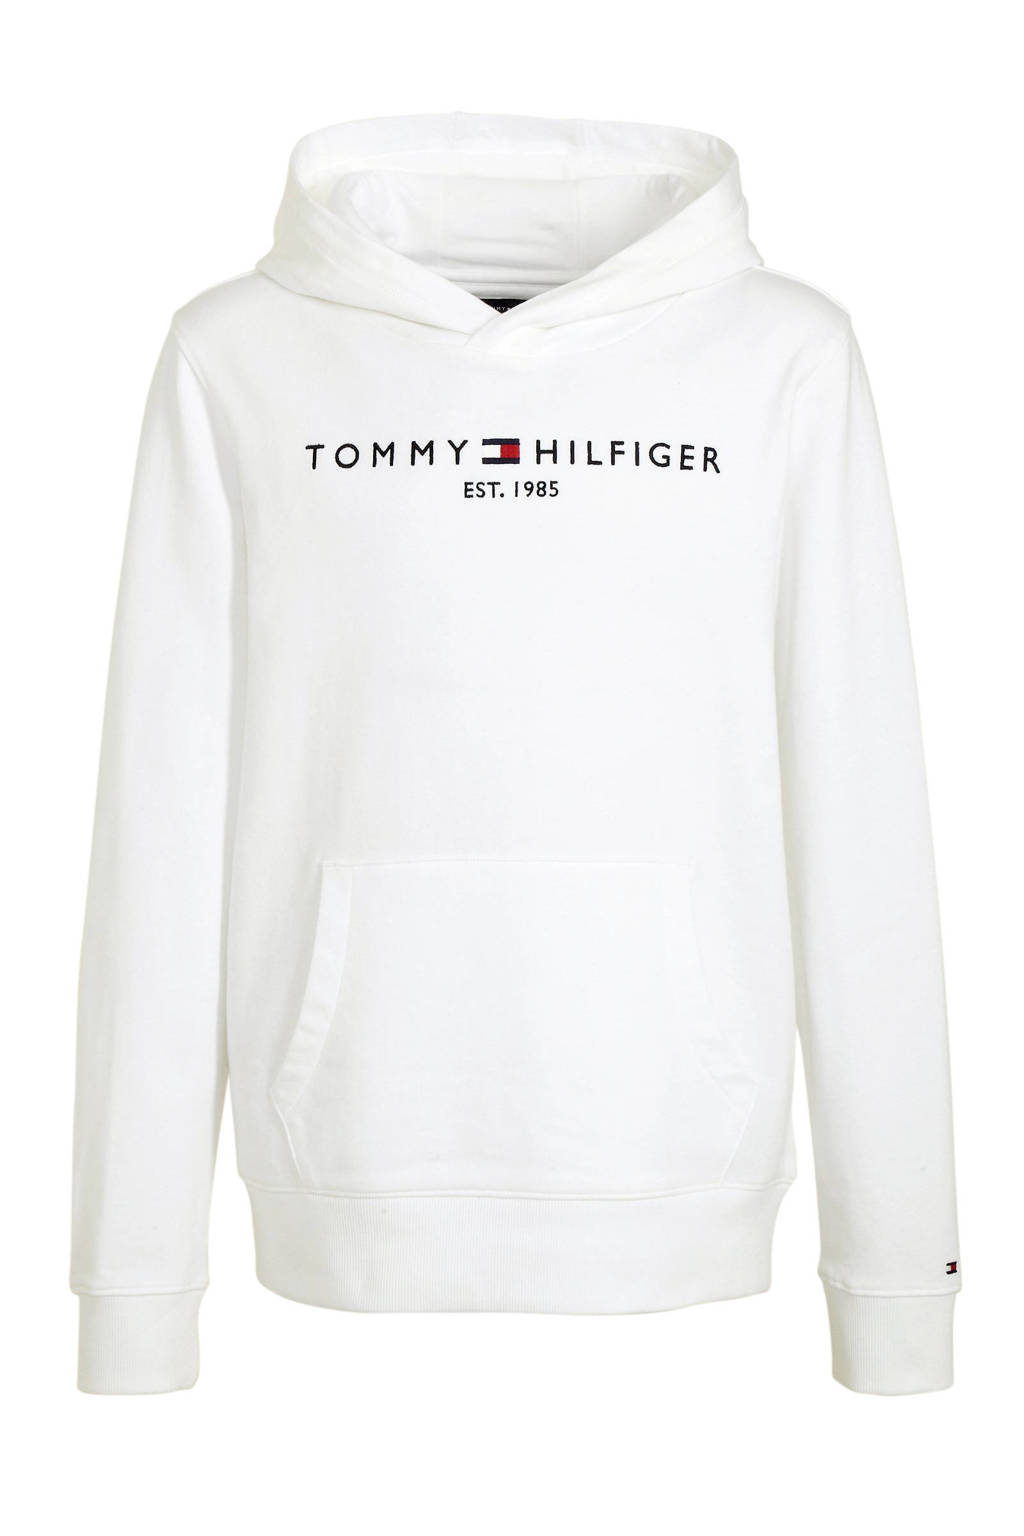 Aantrekkelijk zijn aantrekkelijk lus navigatie Tommy Hilfiger unisex hoodie met logo wit | wehkamp